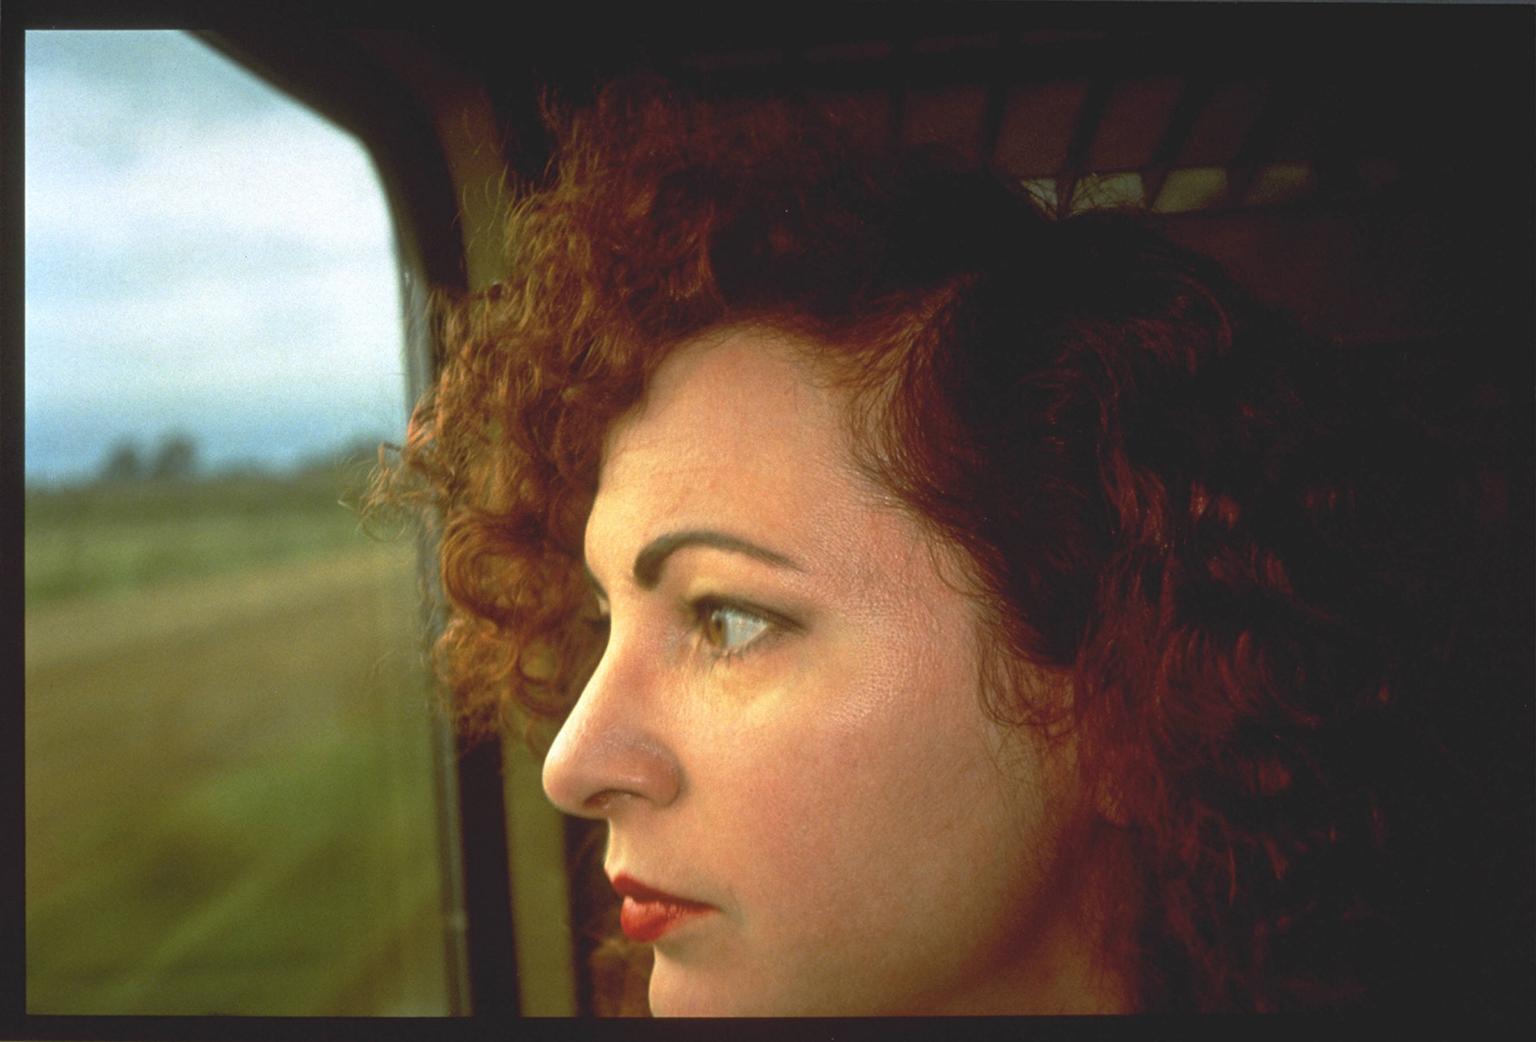 Self-Portrait on the train, Germany 1992. © Nan Goldin